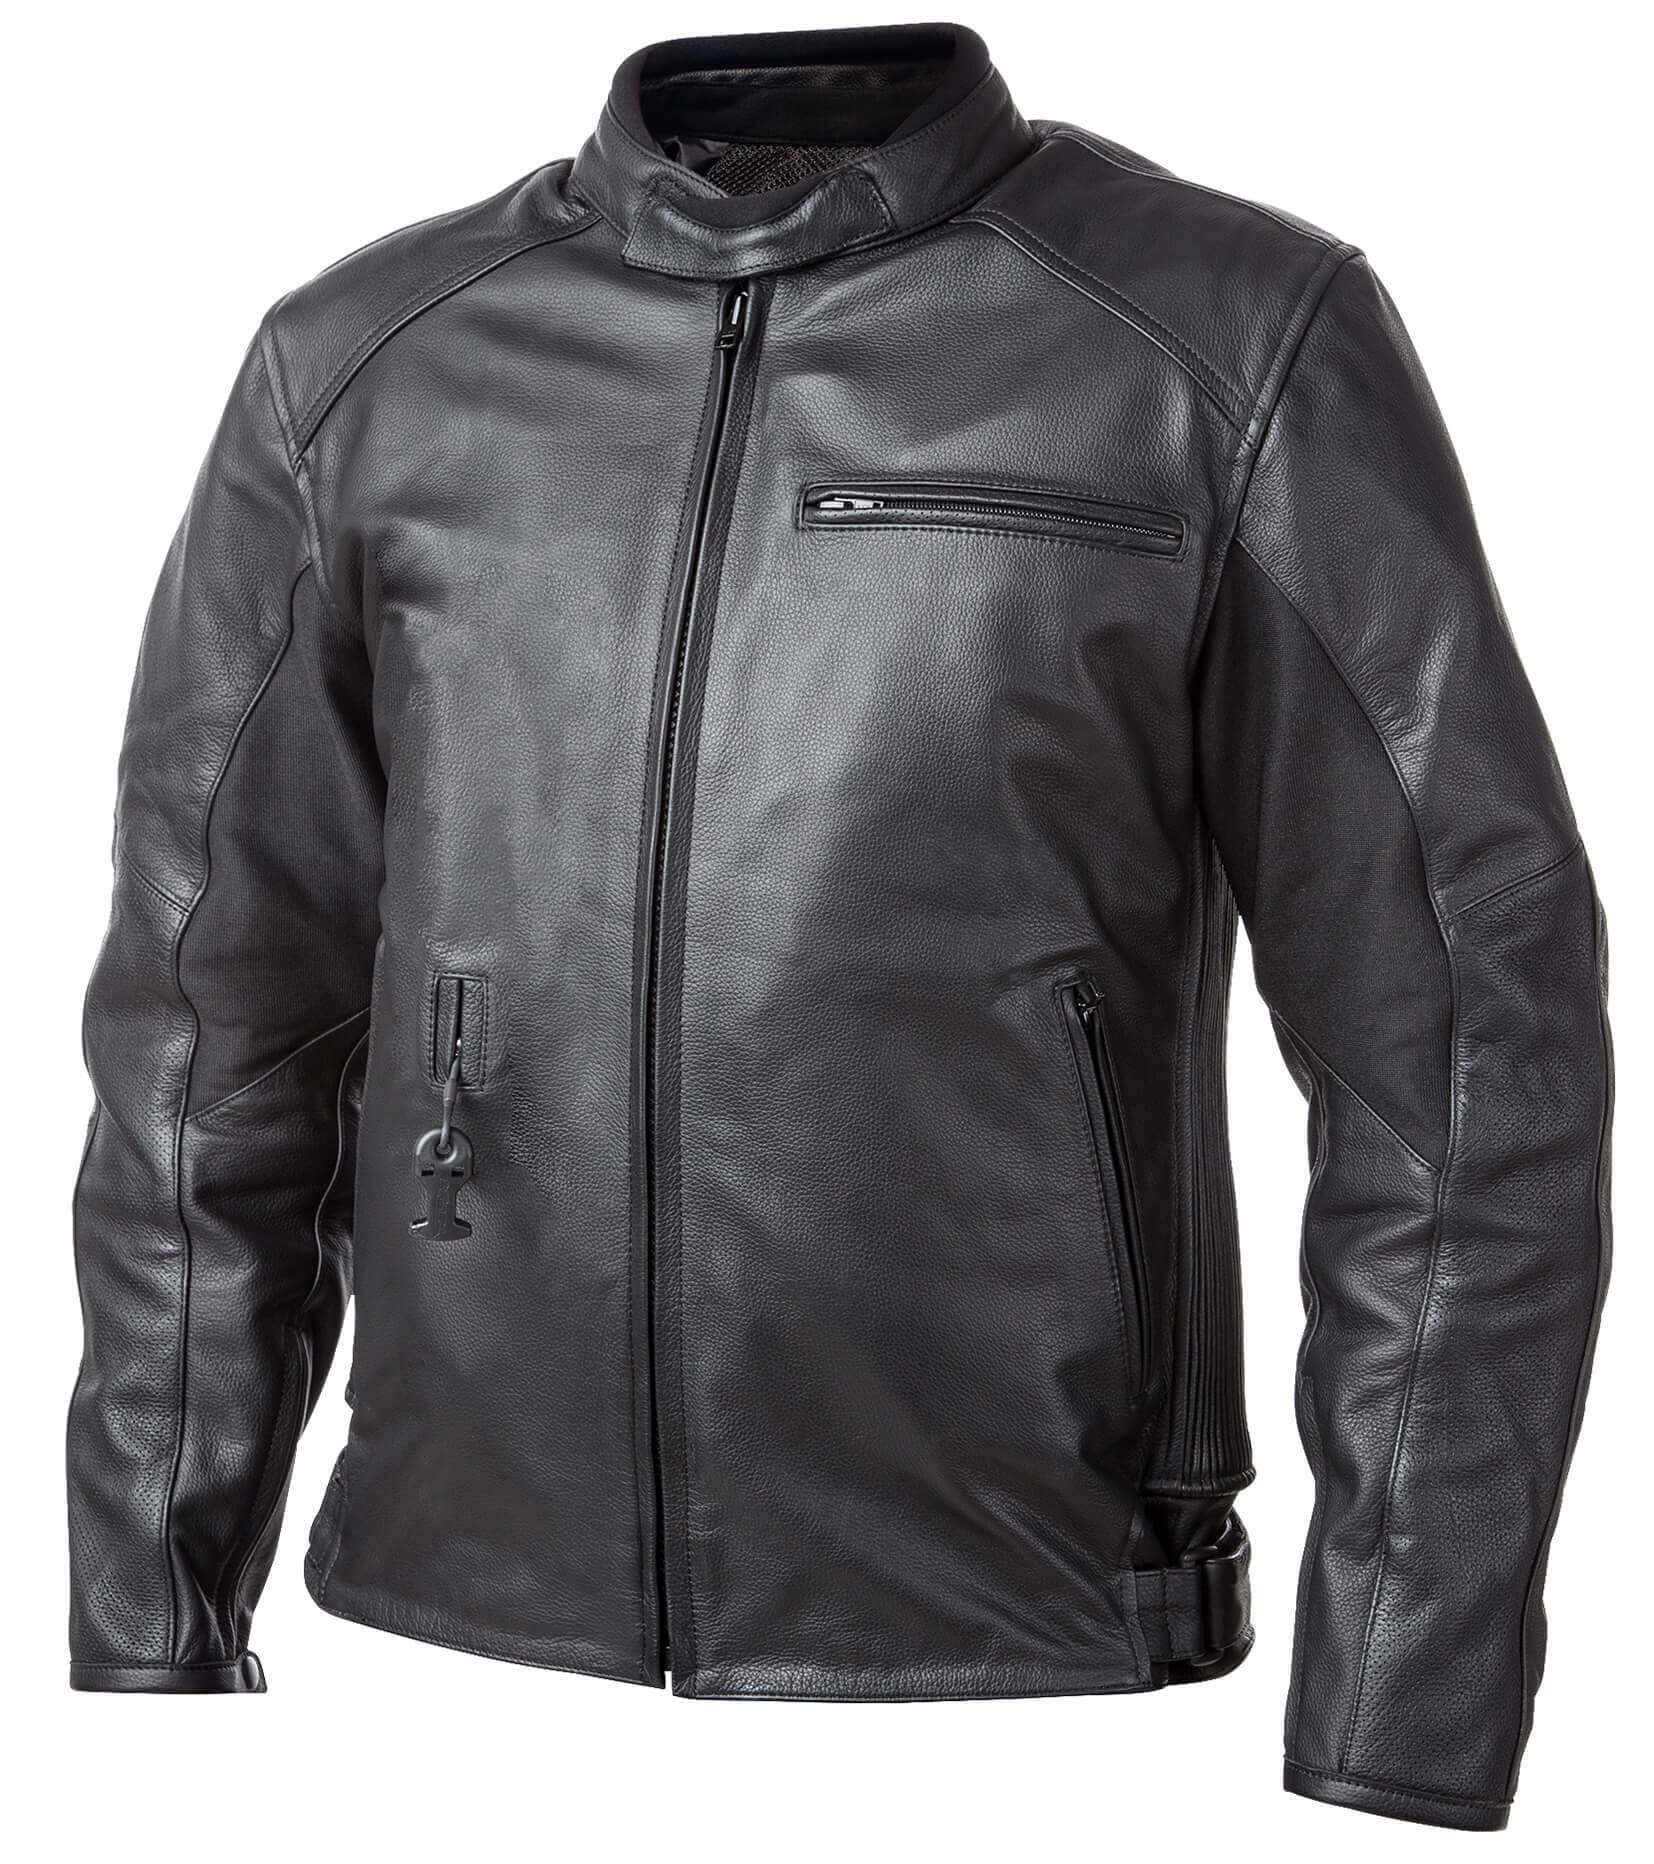 Airbag kabát Helite Roadster Vintage fekete bőr  S  Fekete